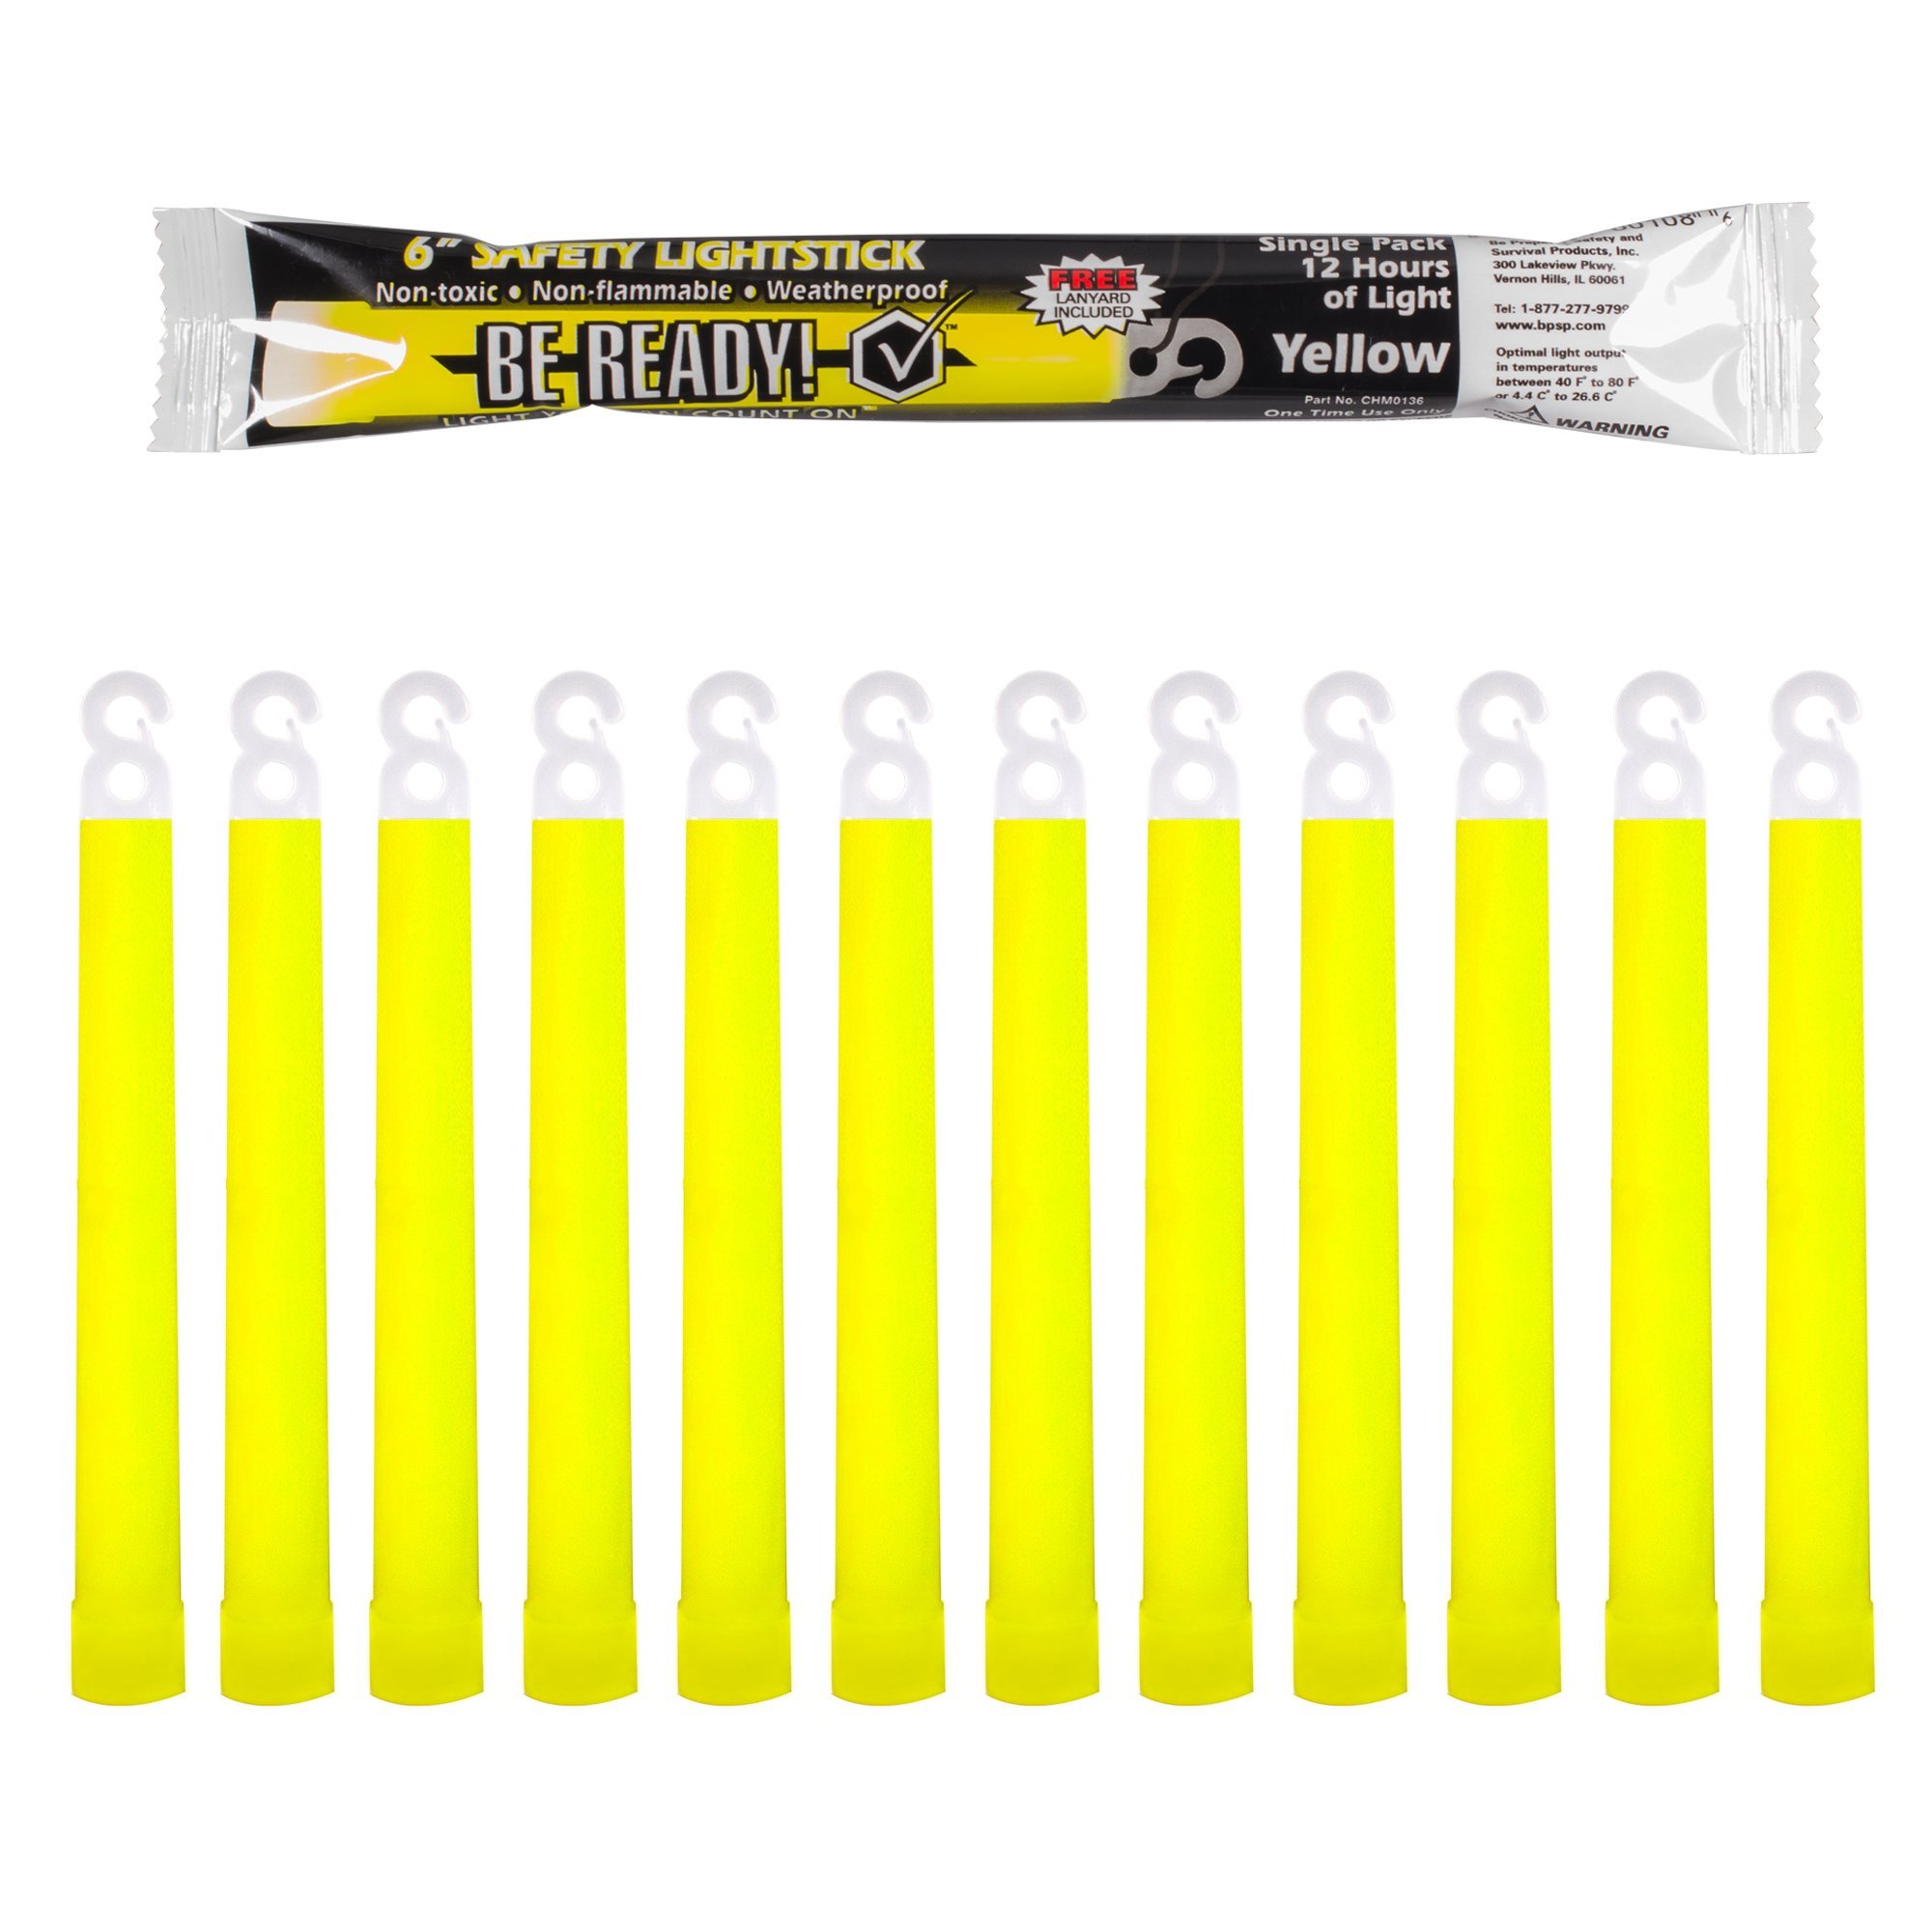 6 Industrial Grade Yellow Light Sticks - 12 Hour